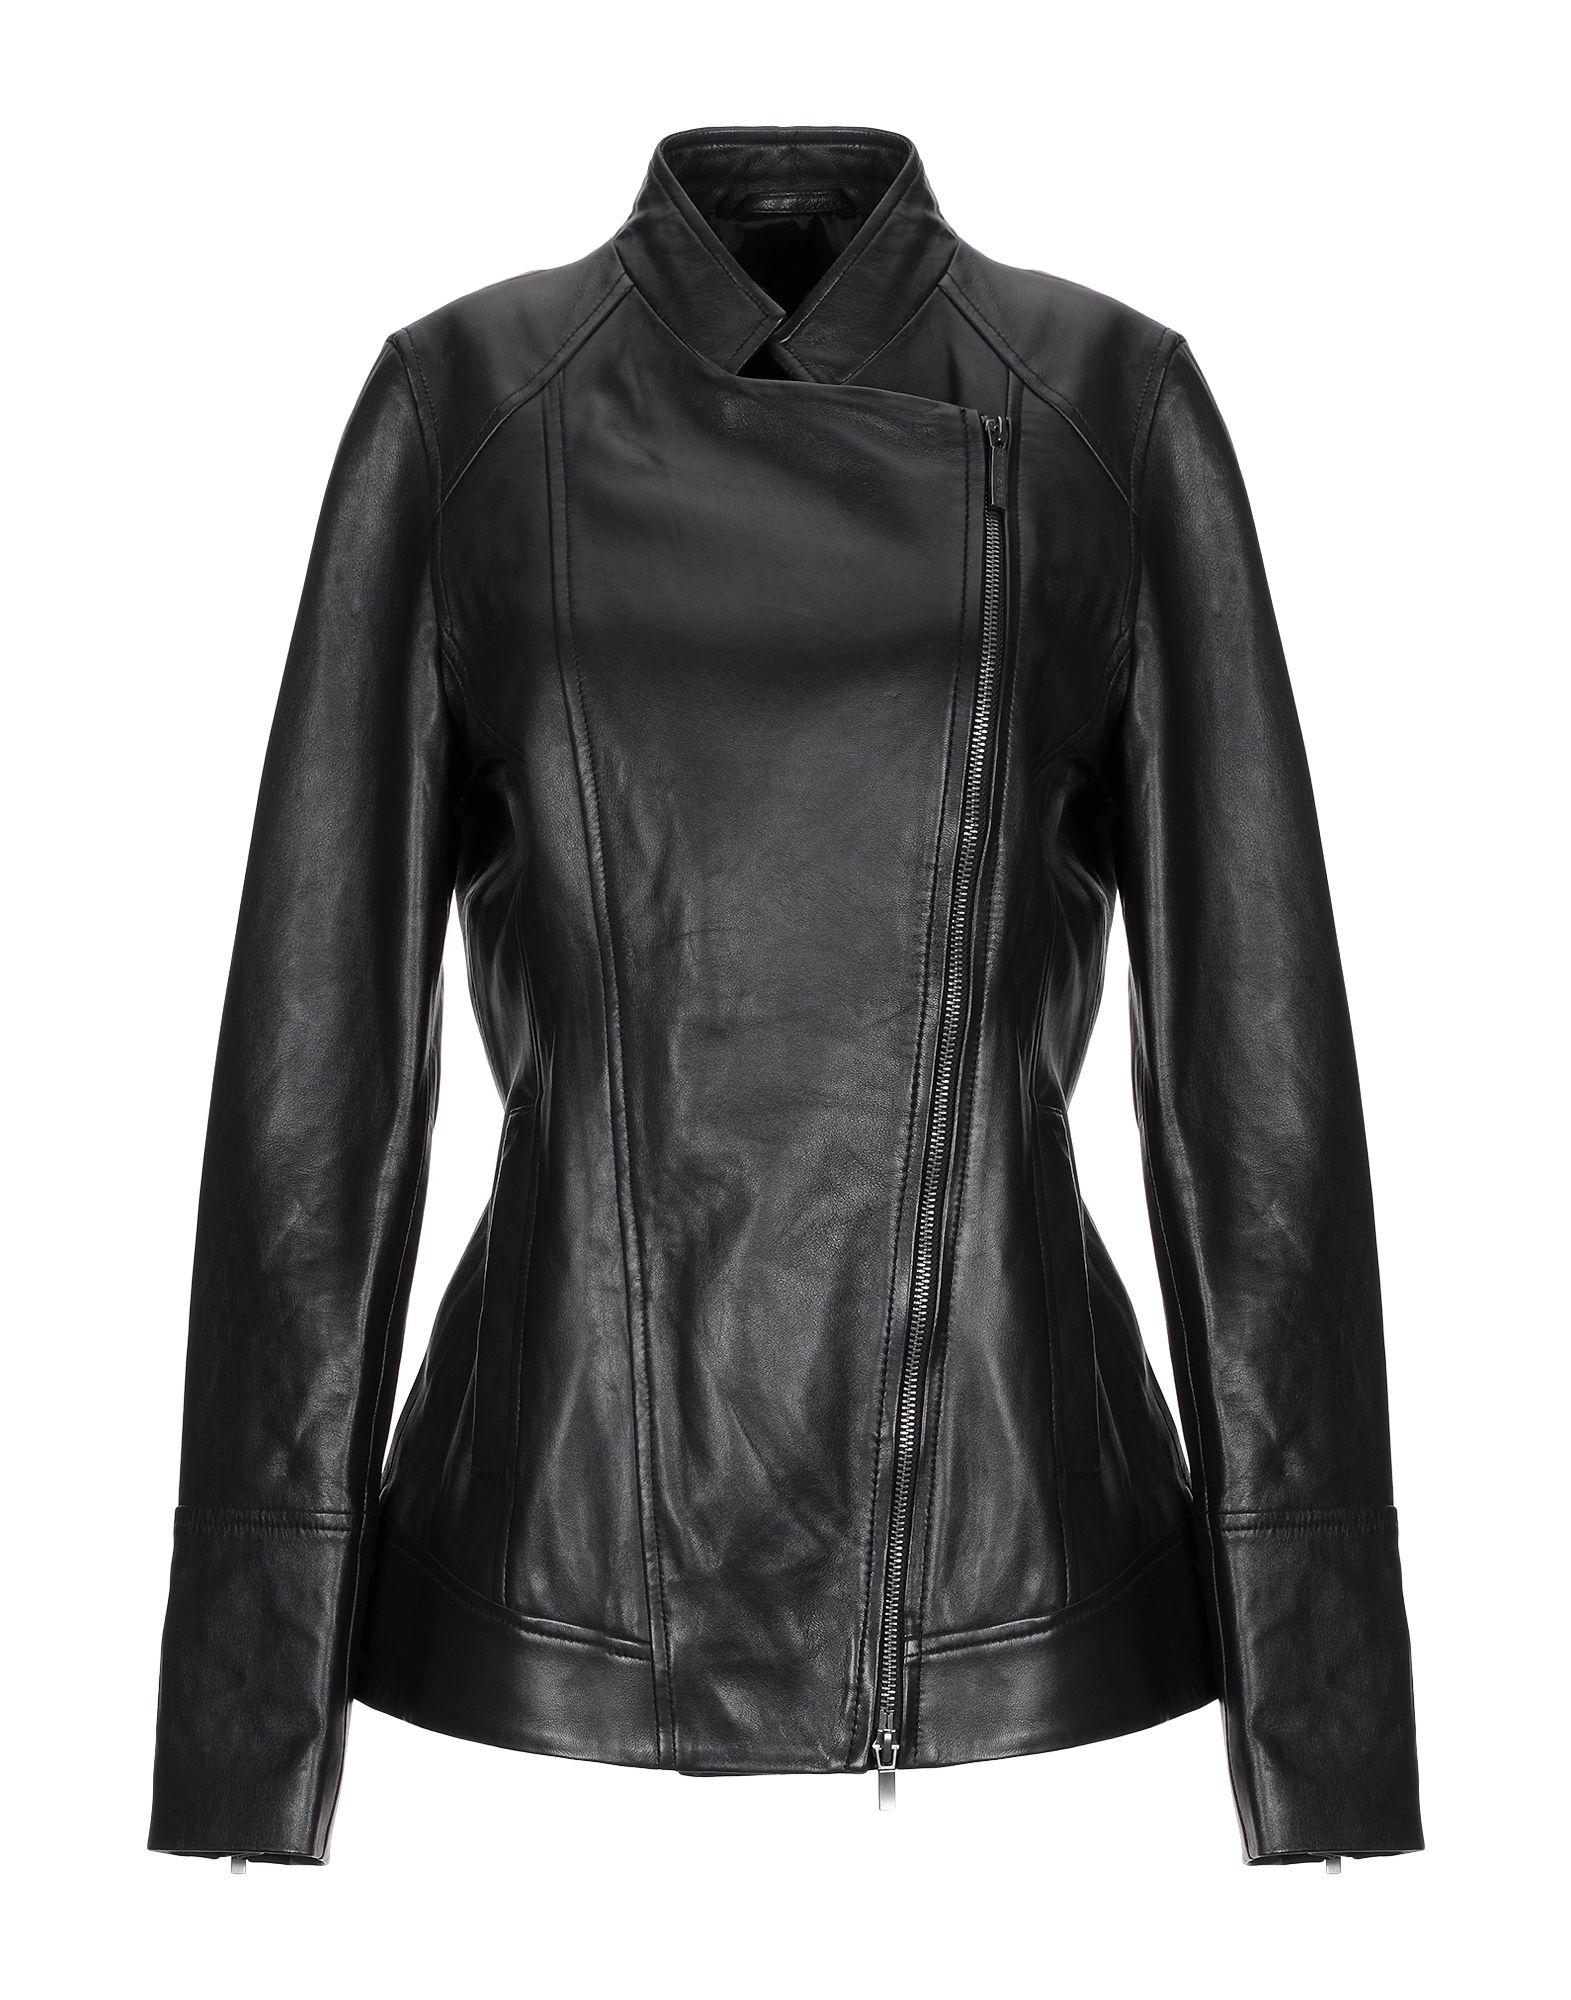 Stefanel Leather Jacket in Black - Lyst